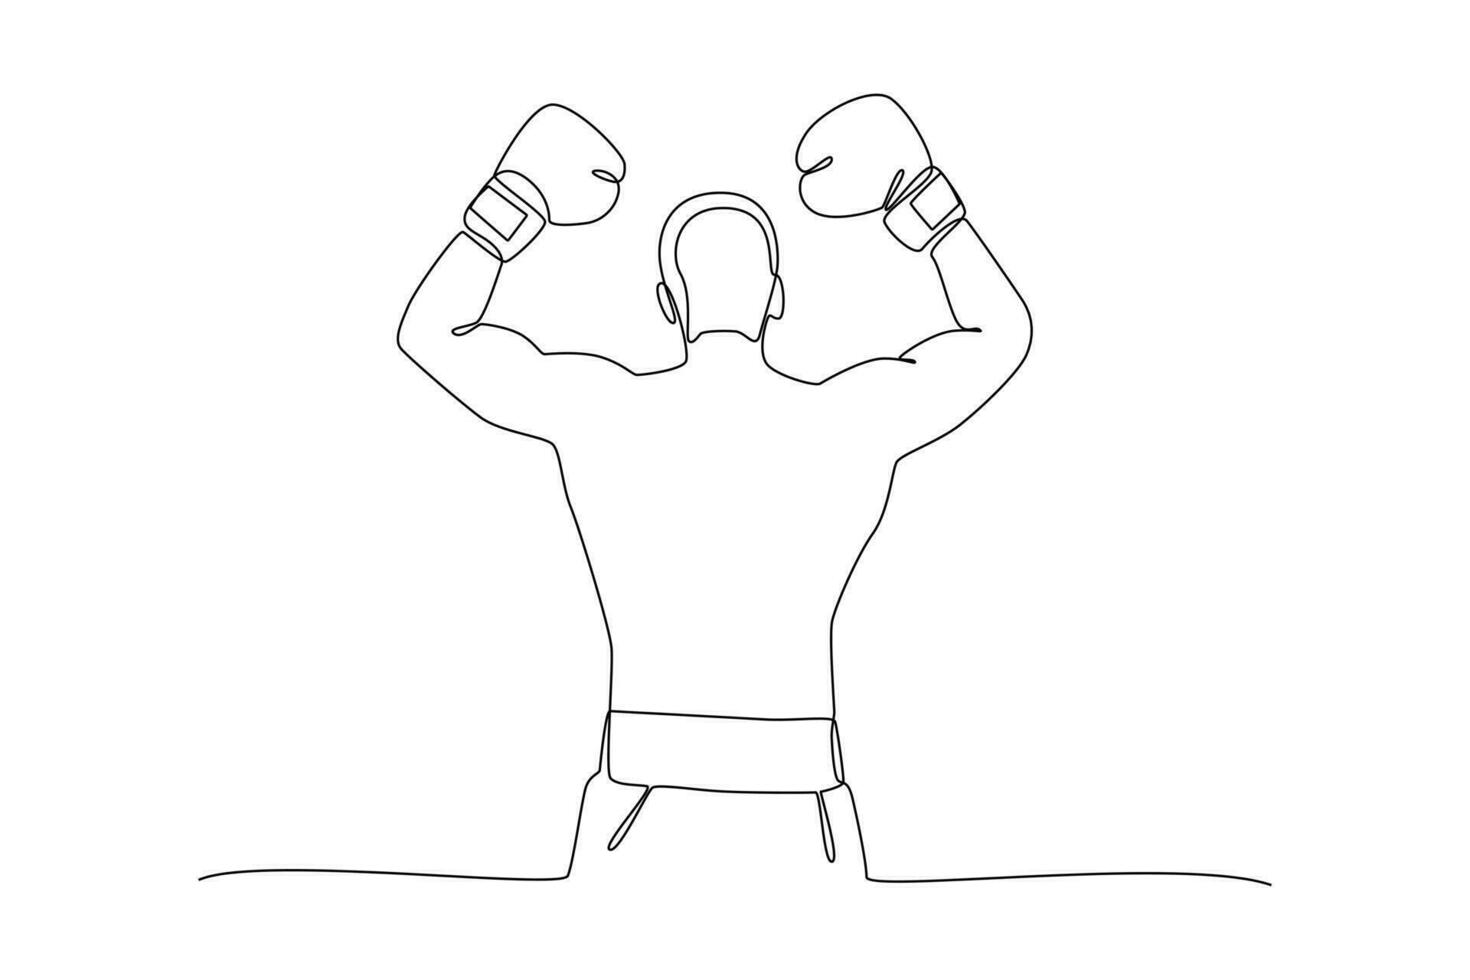 kontinuierlich einer Linie Zeichnung Boxer, muai thailändisch Kämpfer. Boxen, Sport, trainieren Konzept. Gekritzel Vektor Illustration.